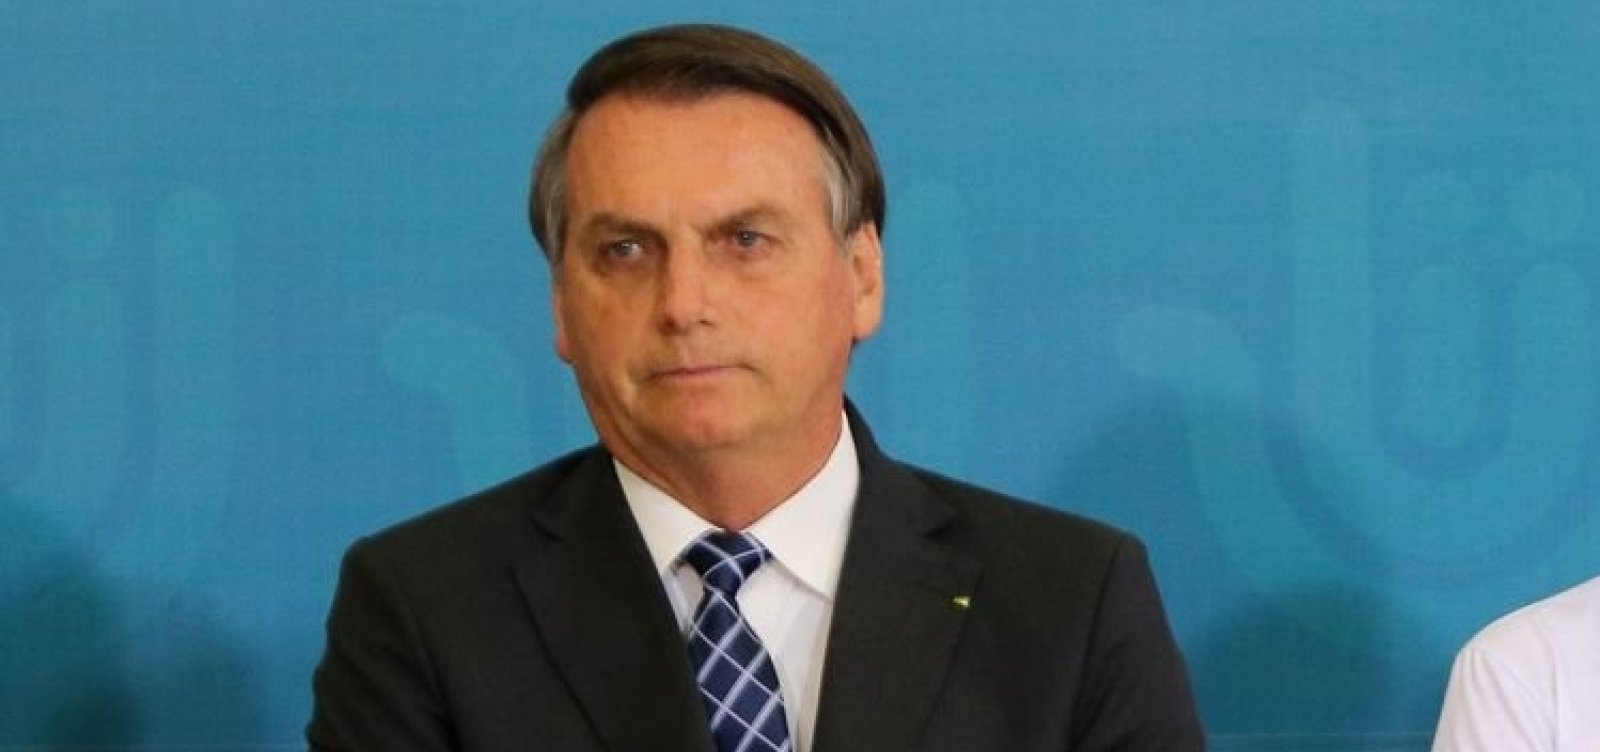 Datafolha: 36% reprovam e 30% aprovam o governo Bolsonaro